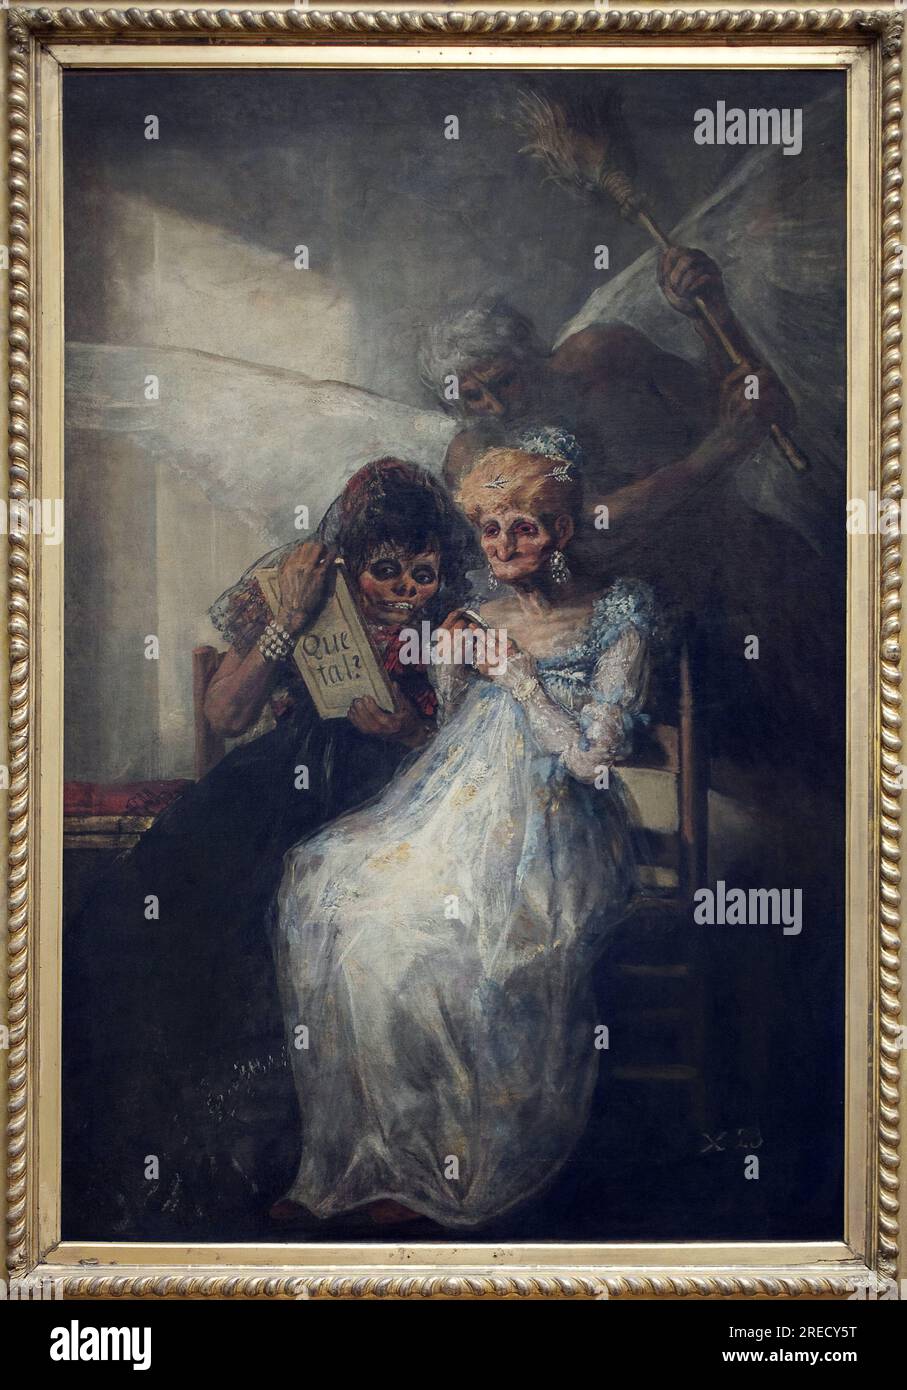 Le temps, dit les vieilles. Peinture de Francisco de Goya y Lucientes (1746-1828), huile sur toile, vers 1808-1812, art espagnol debut 19e siecle. Musée des Beaux Arts de Lille. Banque D'Images